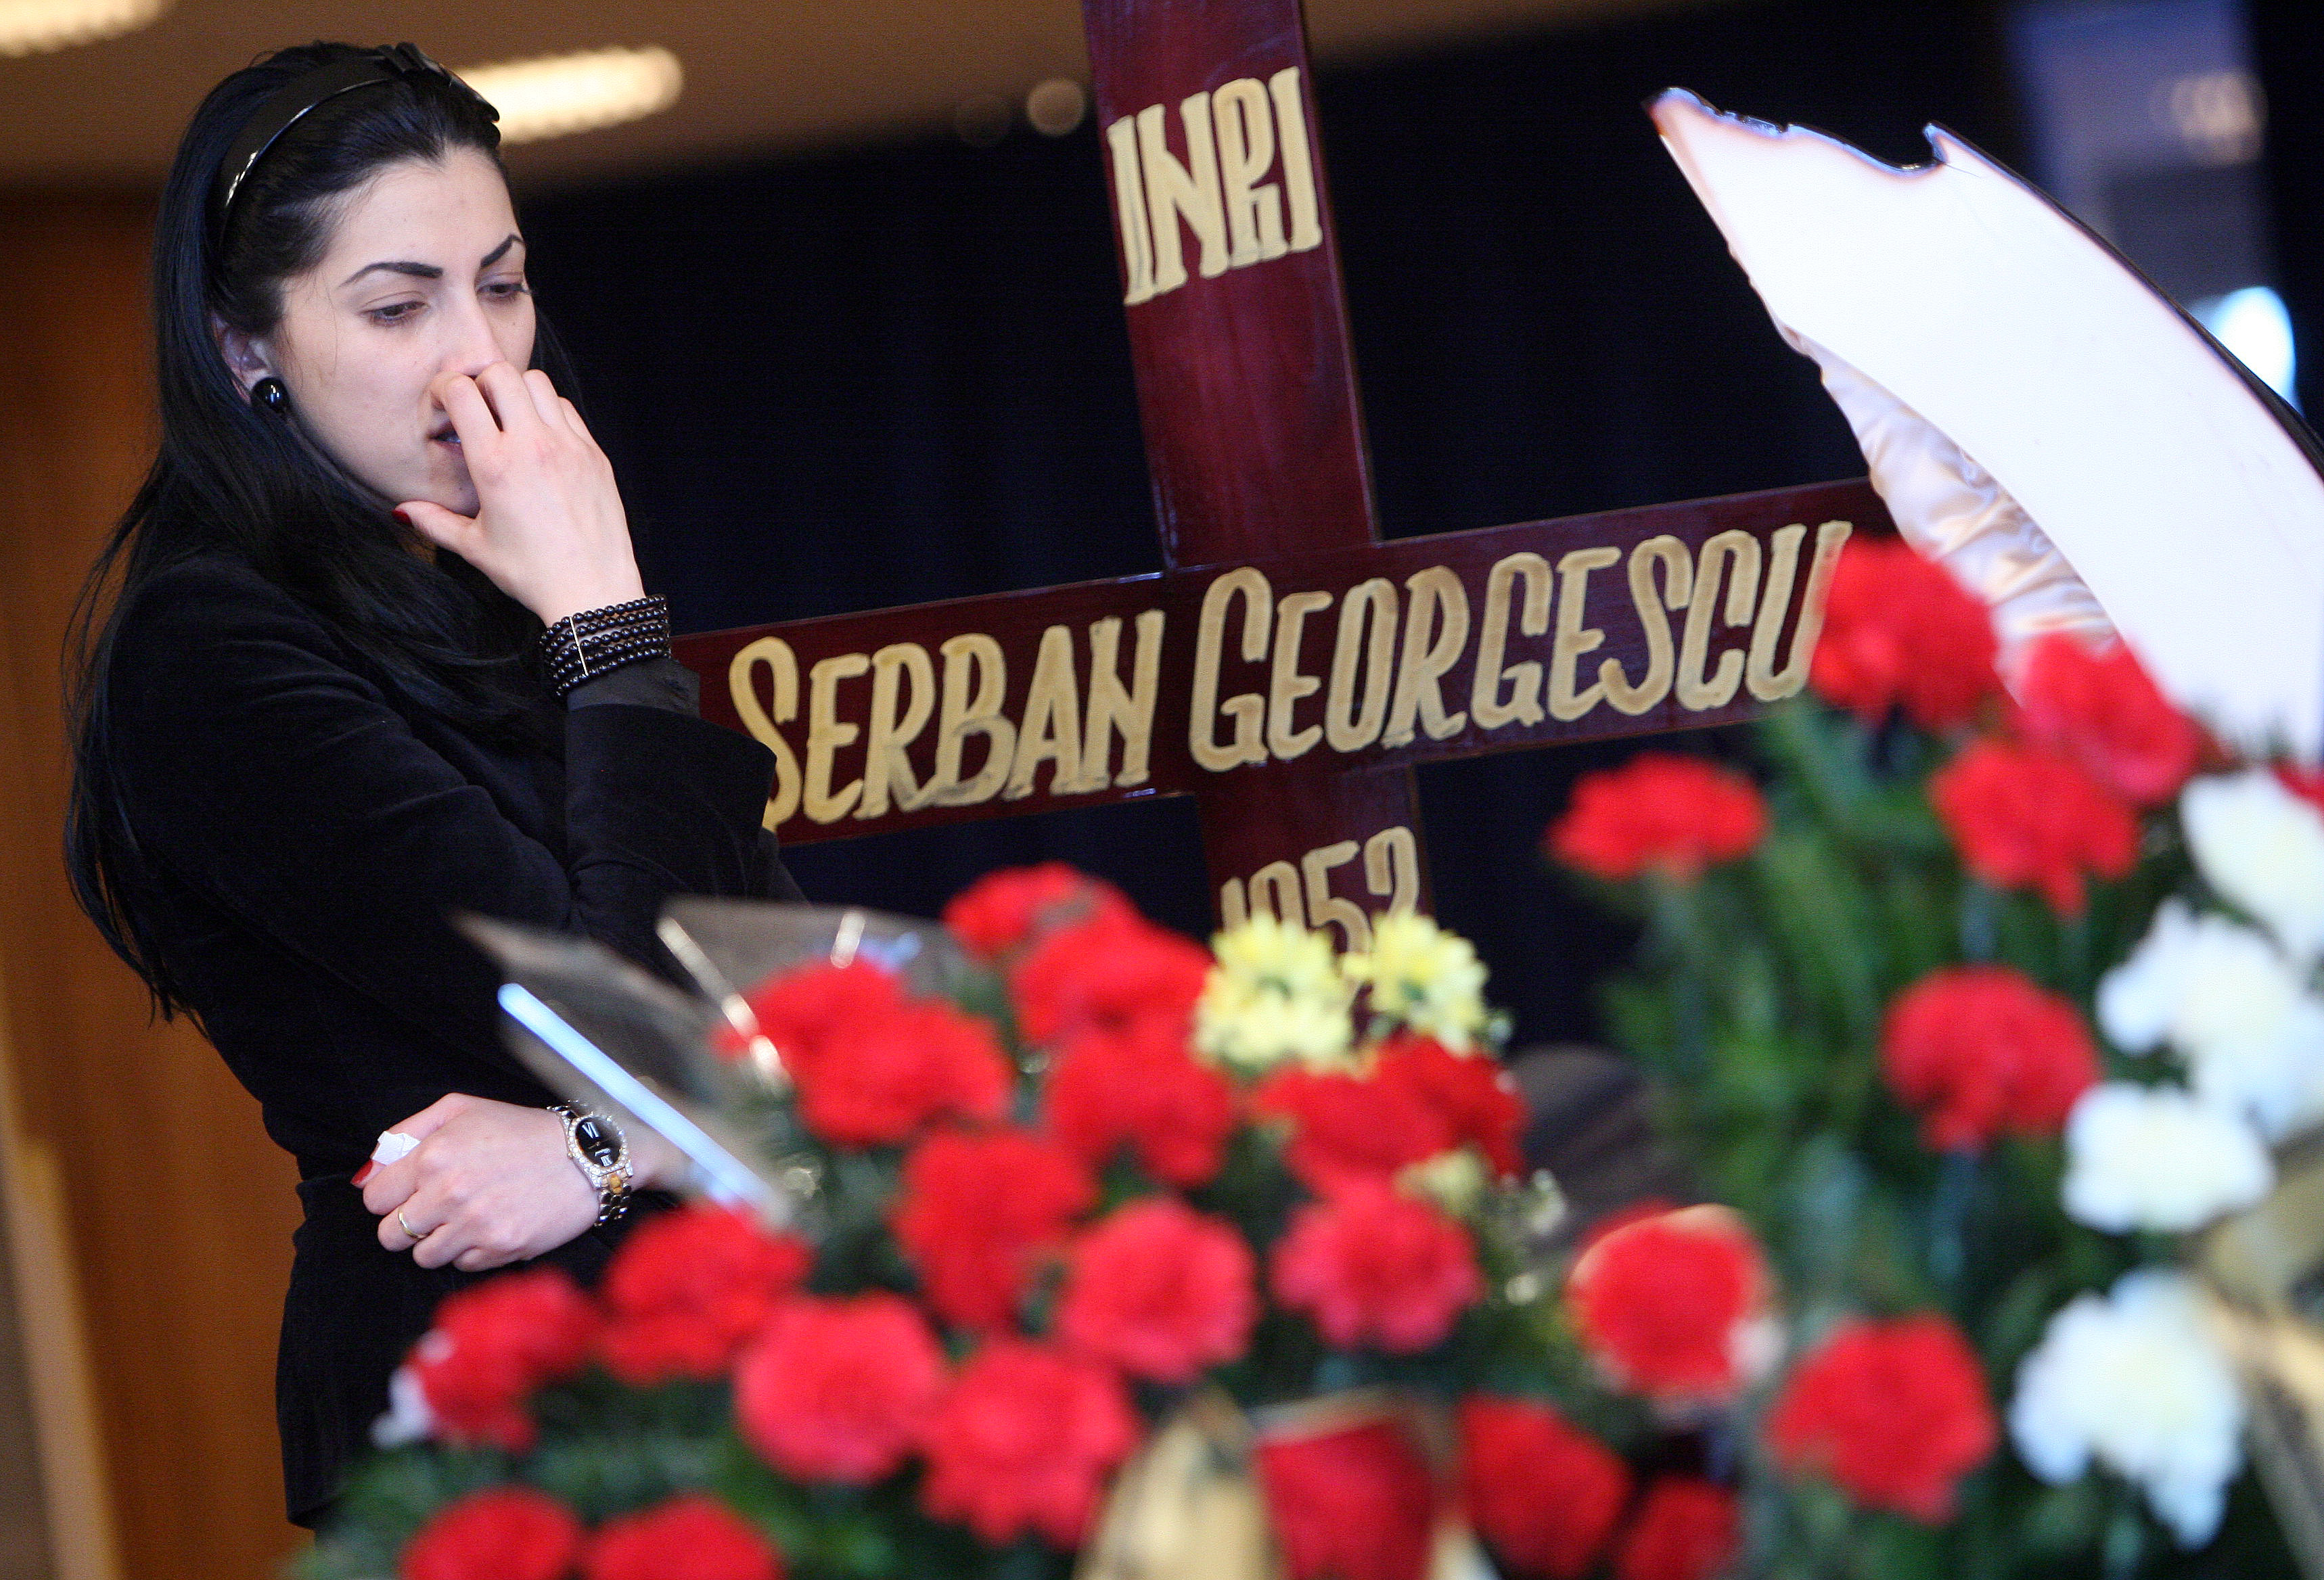 Au trecut sapte ani de la moartea lui Serban Georgescu, dar Eniko